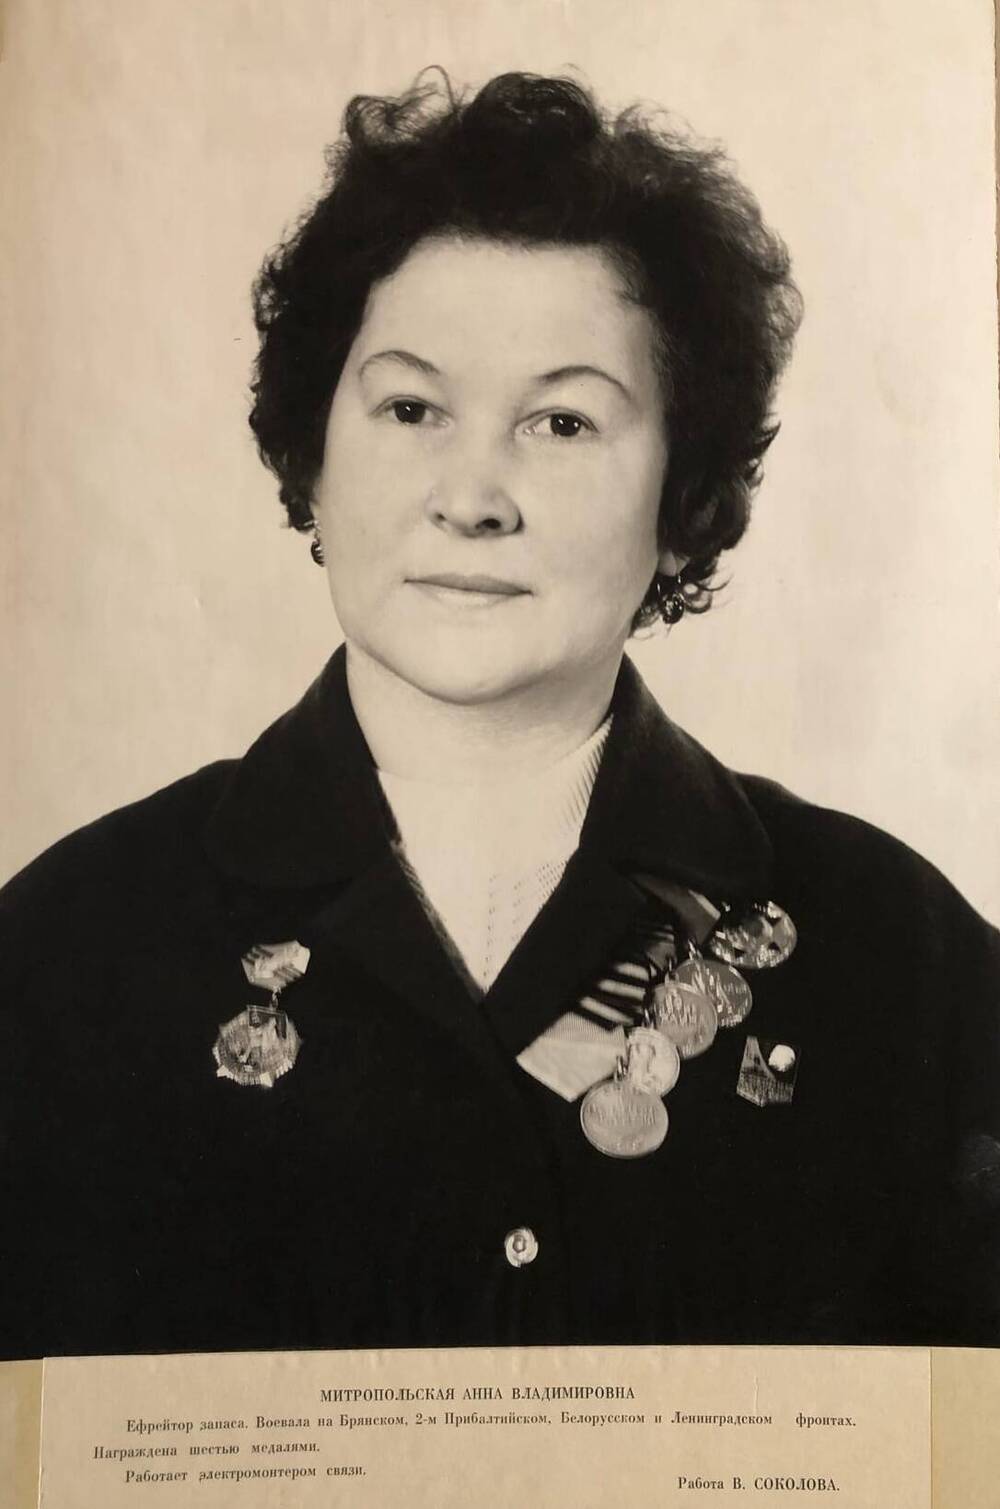 Фотография Митропольской Анны Владимировны, участницы Великой Отечественной войны 1941-1945 гг.